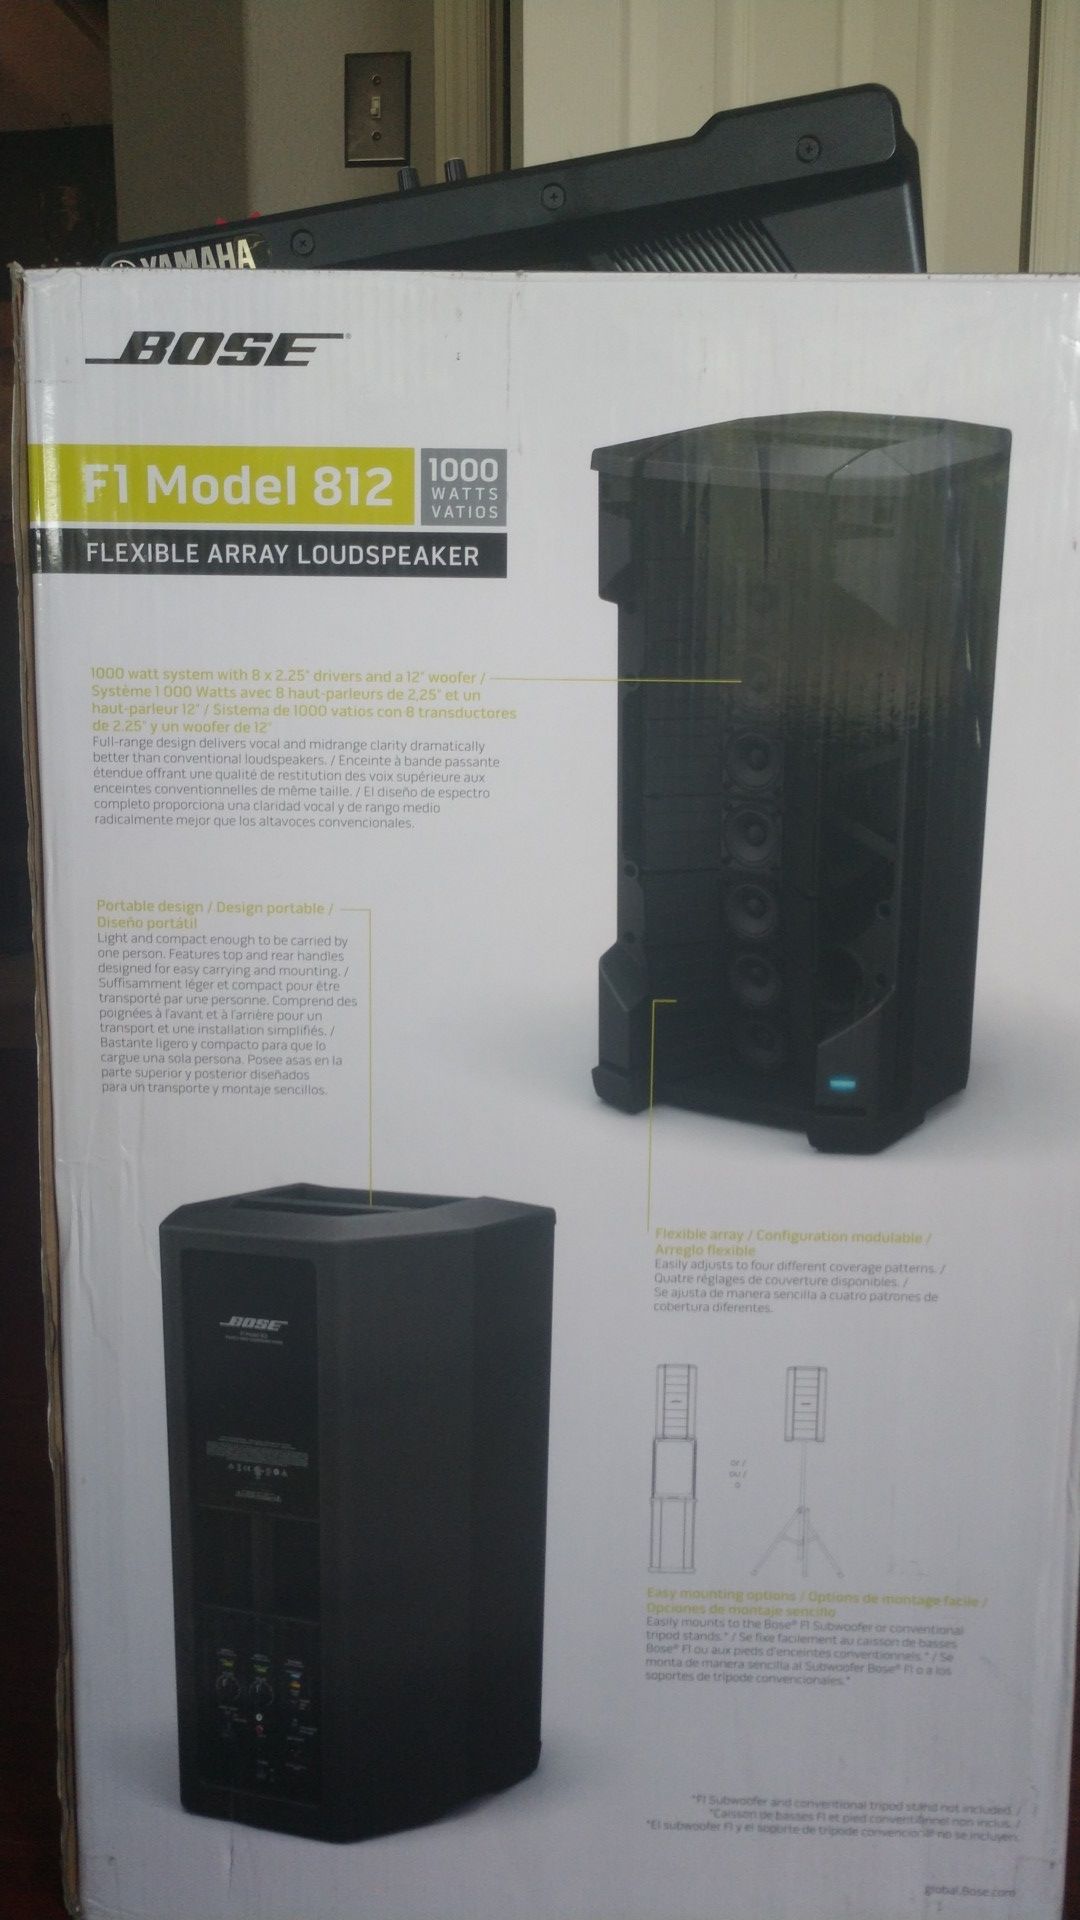 Bose F1 Model 812 1000 Watt Flexible Array Loud Speaker